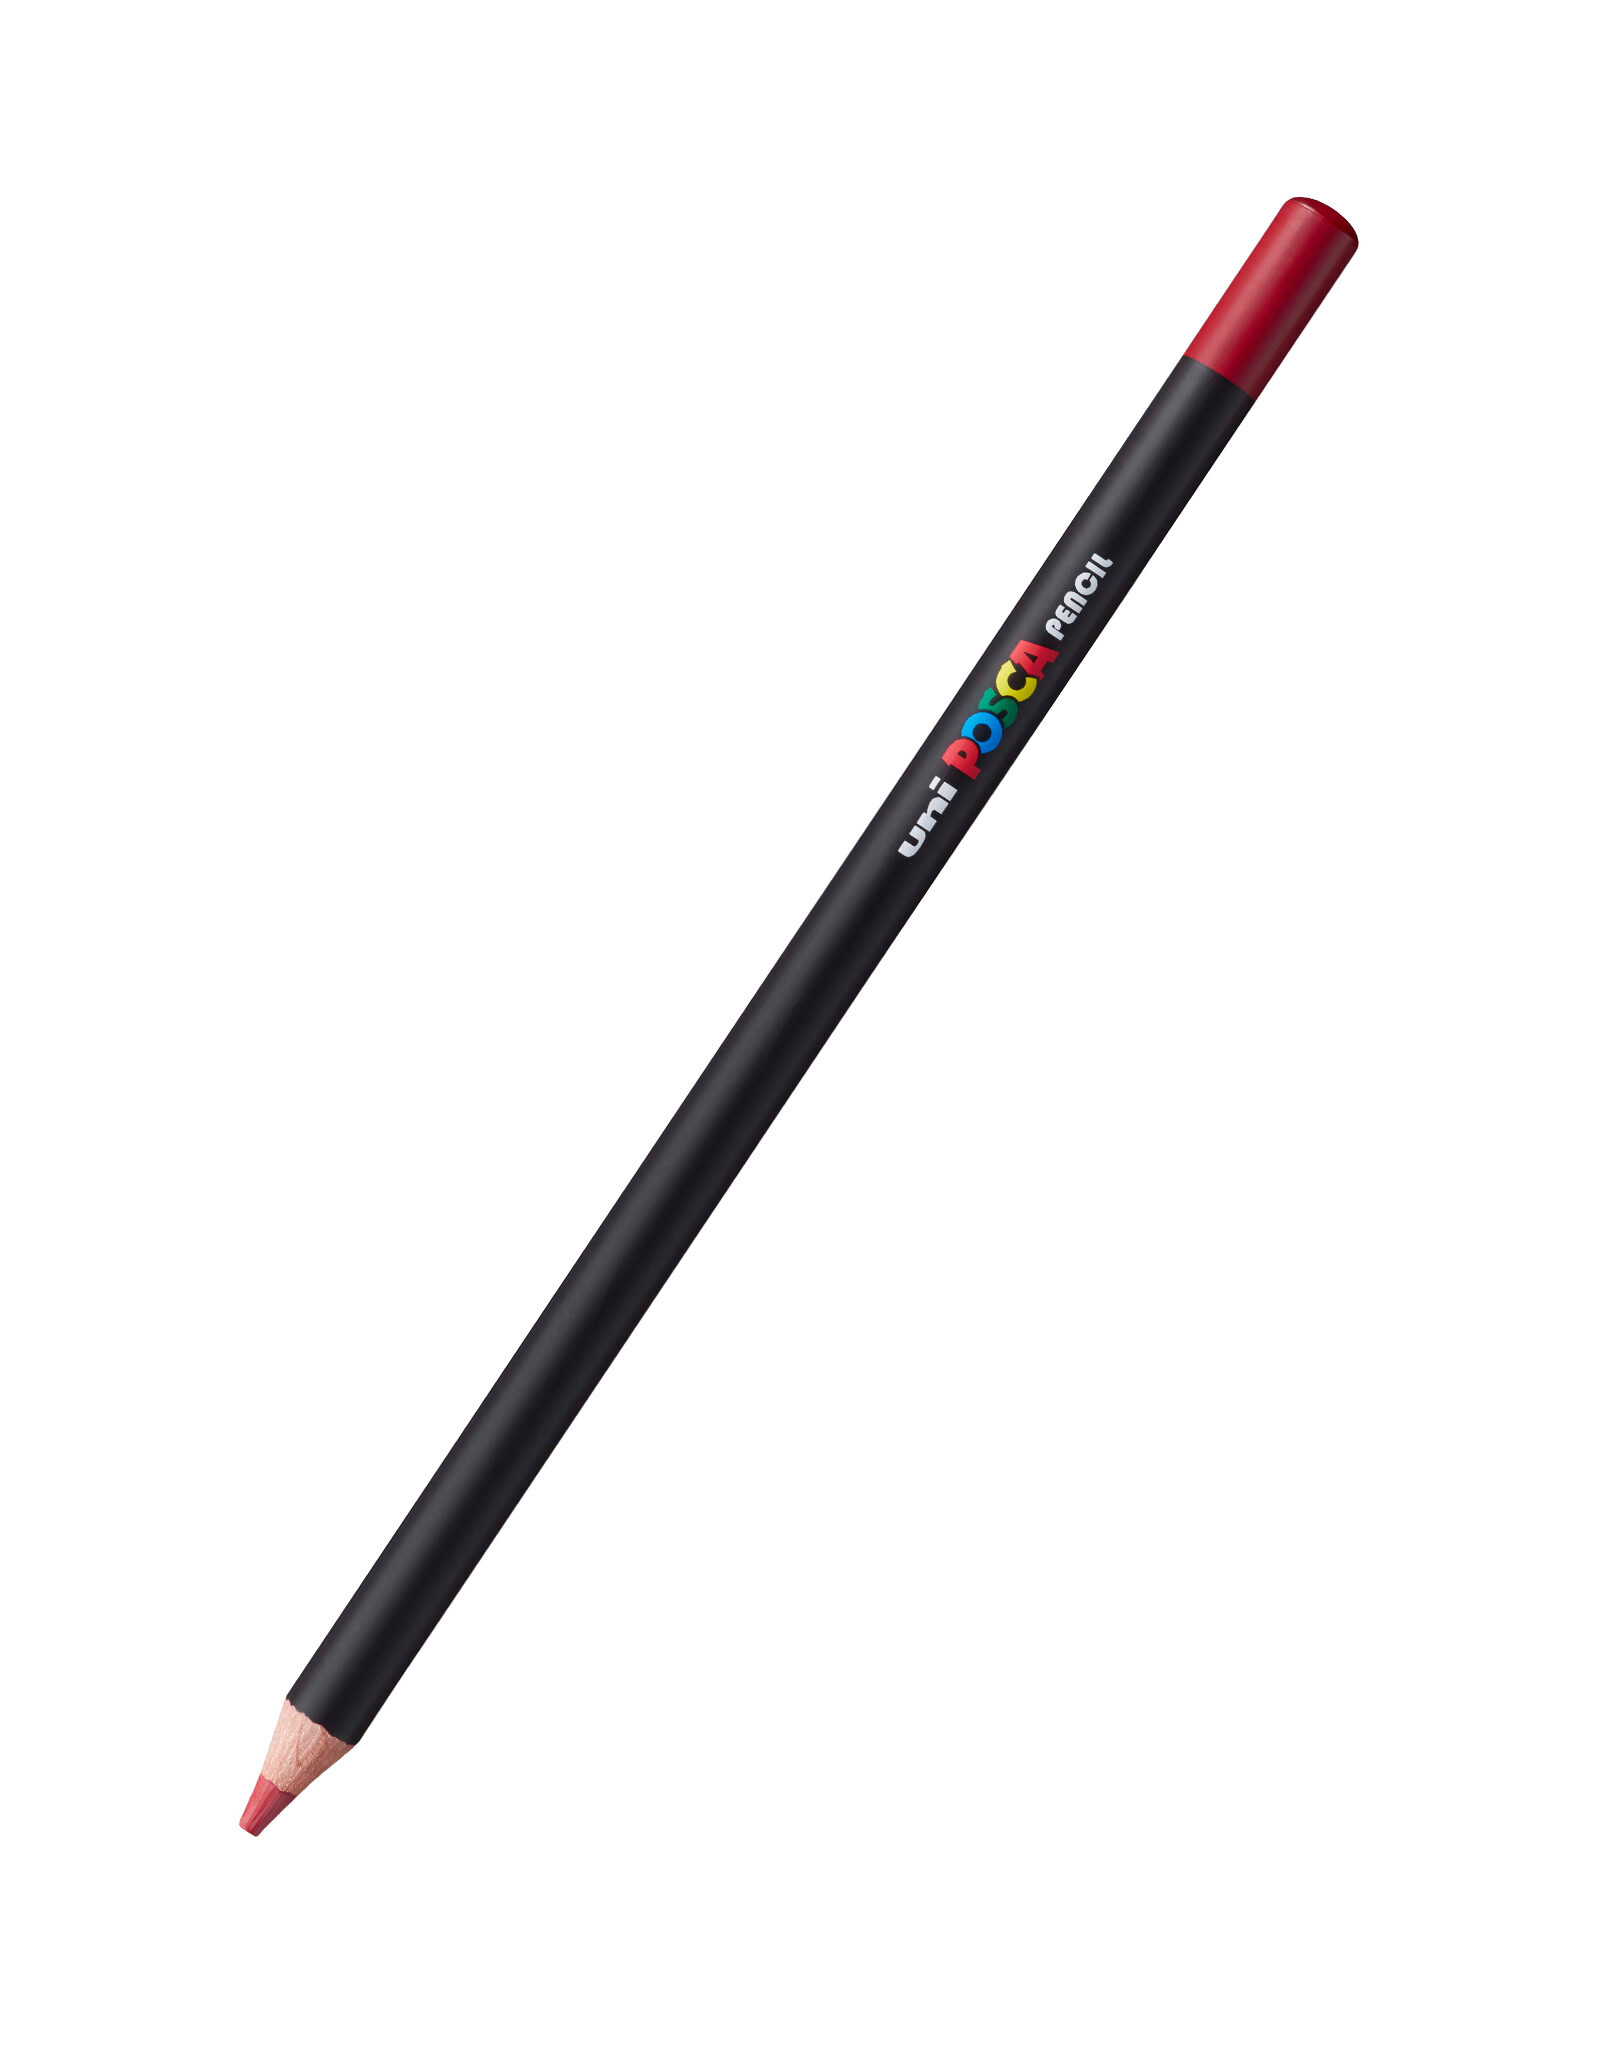 POSCA Uni POSCA Colored Pencil, Red